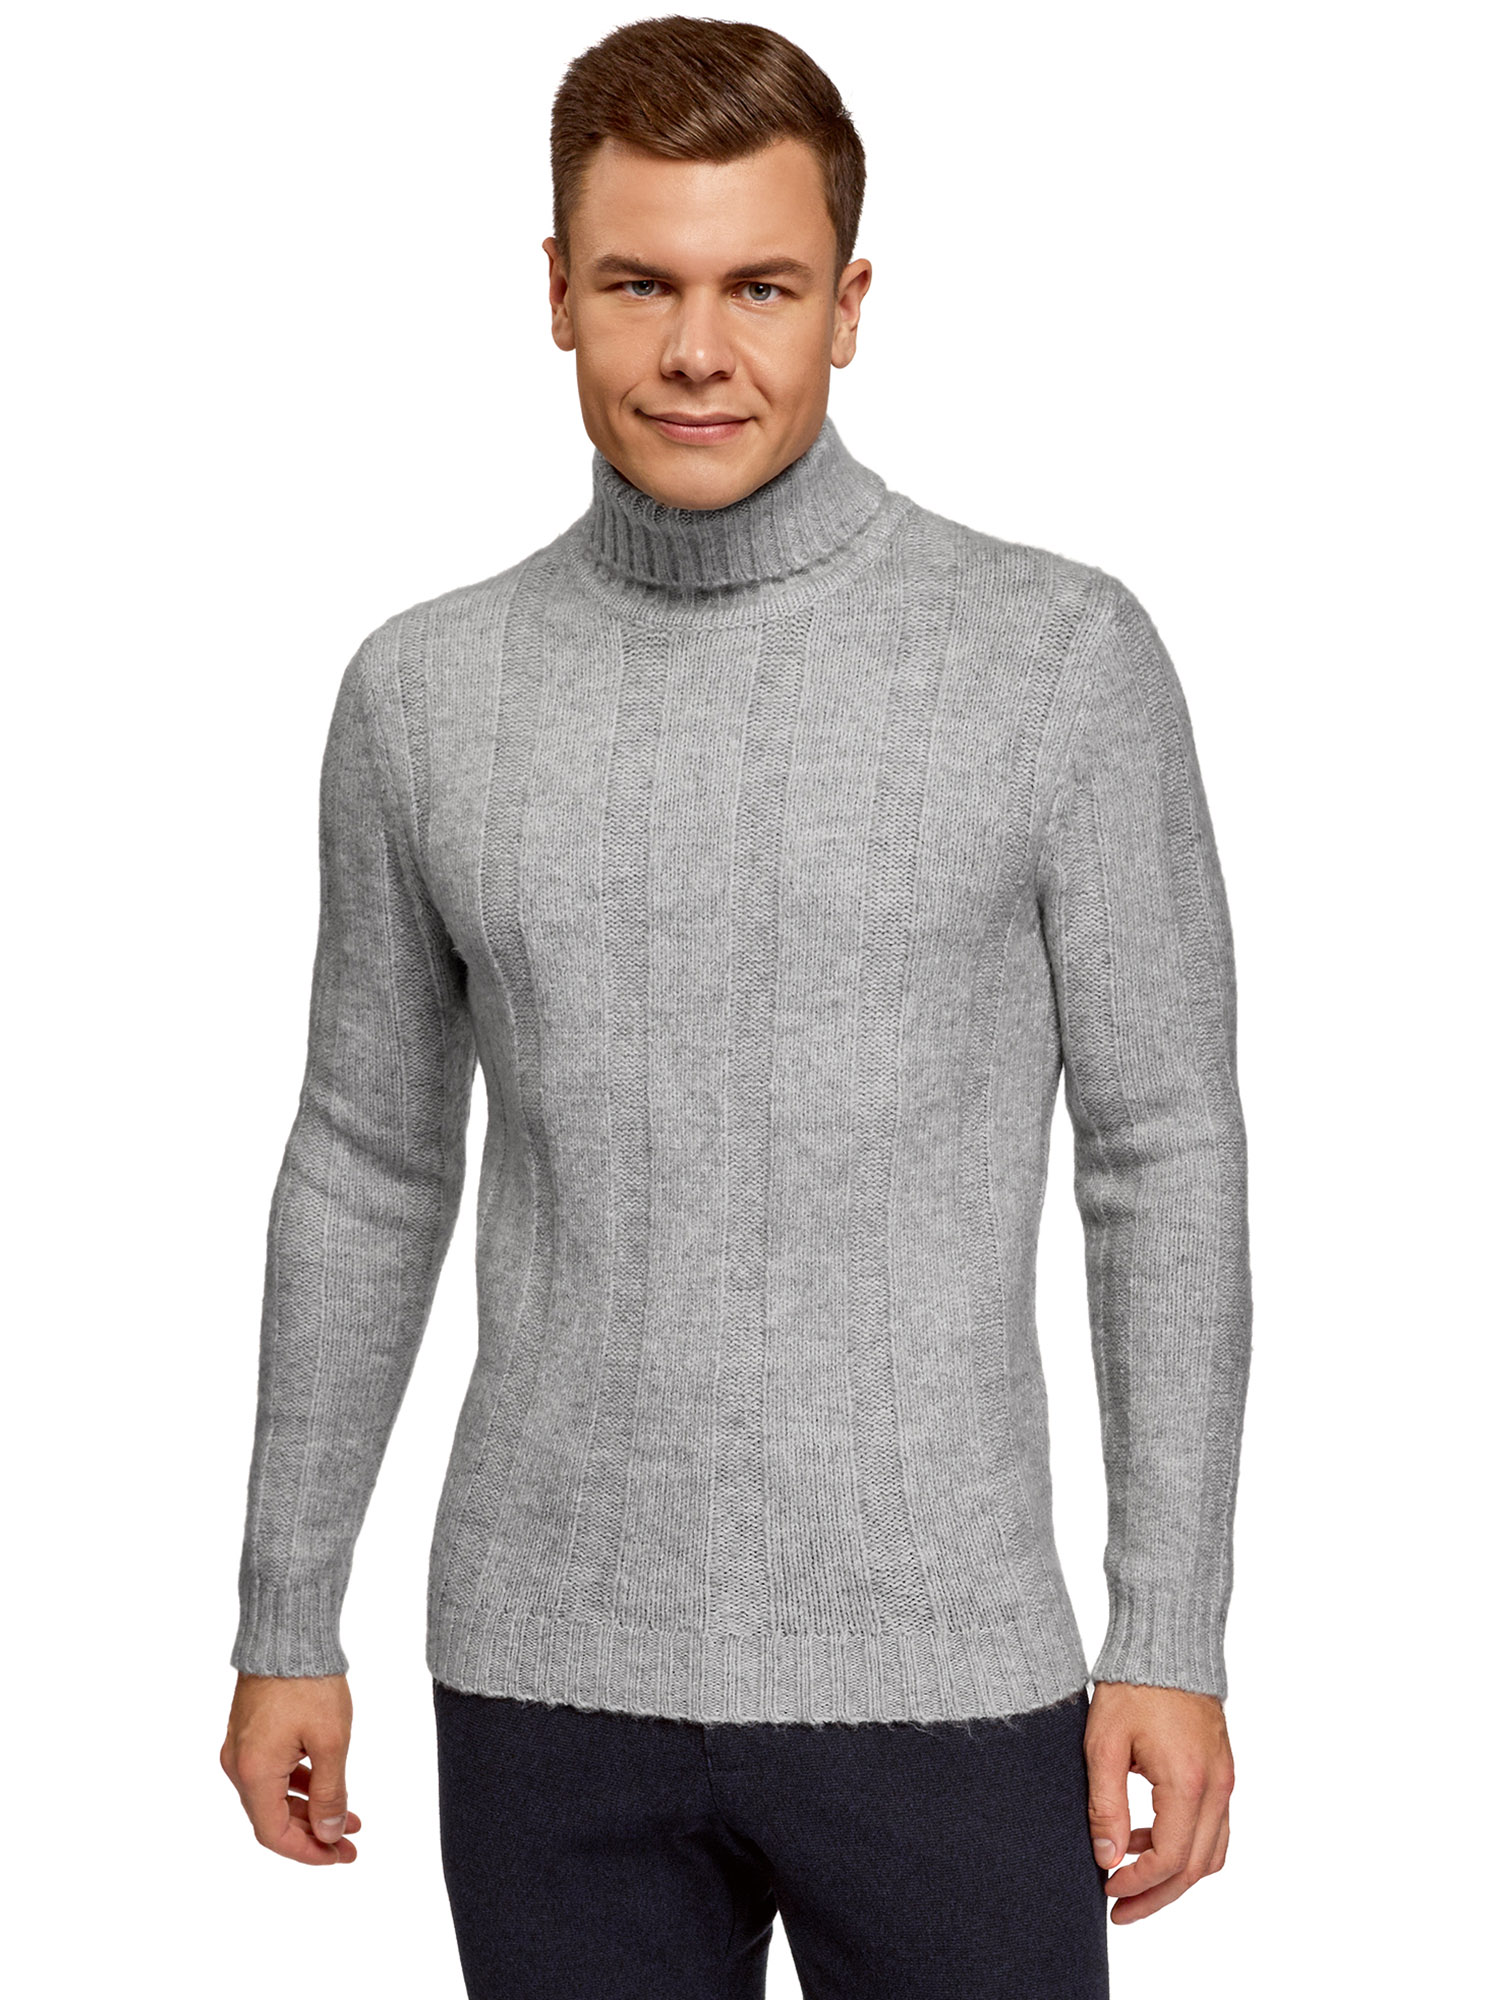 Мужской фактурный свитер